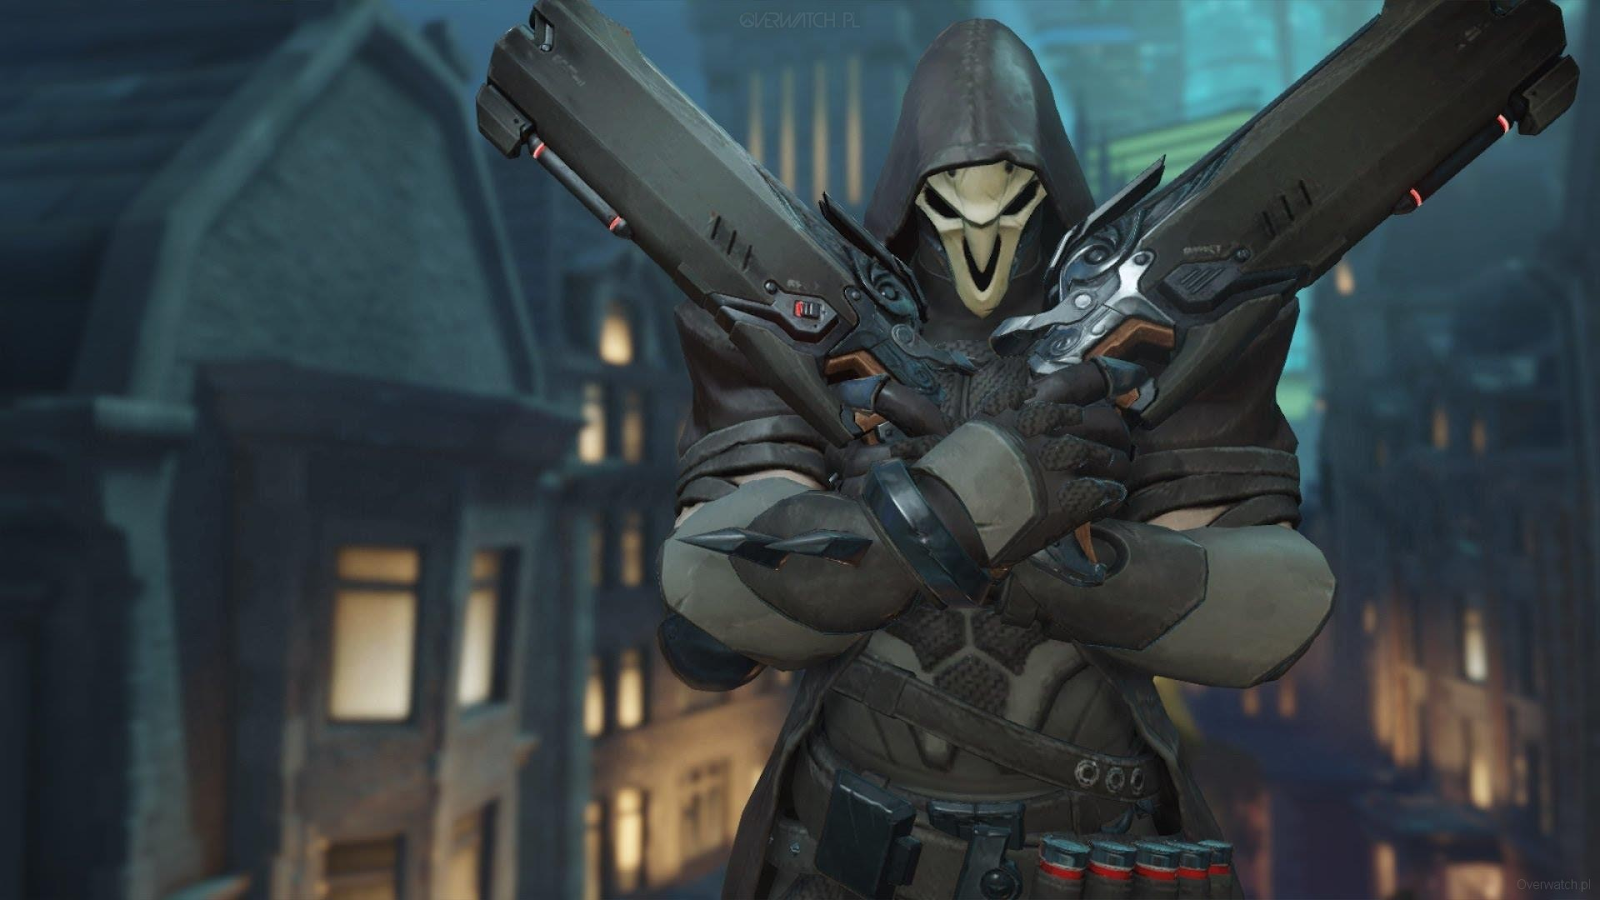 El villano de Overwatch 2, Reaper, cruza sus escopetas mientras mira amenazadoramente a la cámara desde detrás de su máscara. 